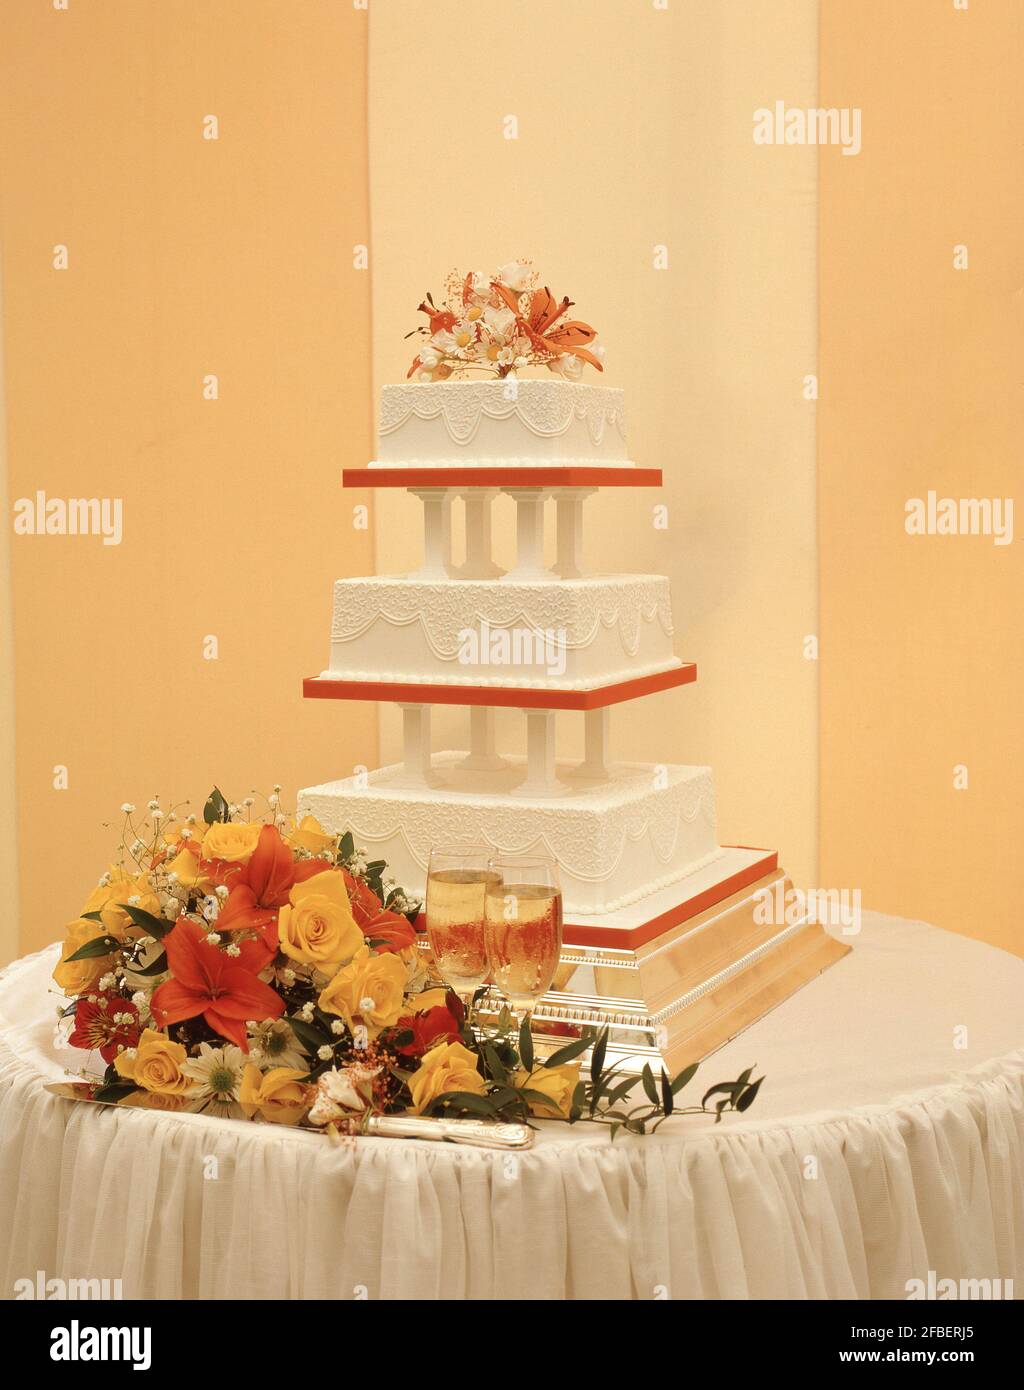 Gâteau de mariage à 3 niveaux avec fleurs et champagne, Surrey, Angleterre, Royaume-Uni Banque D'Images